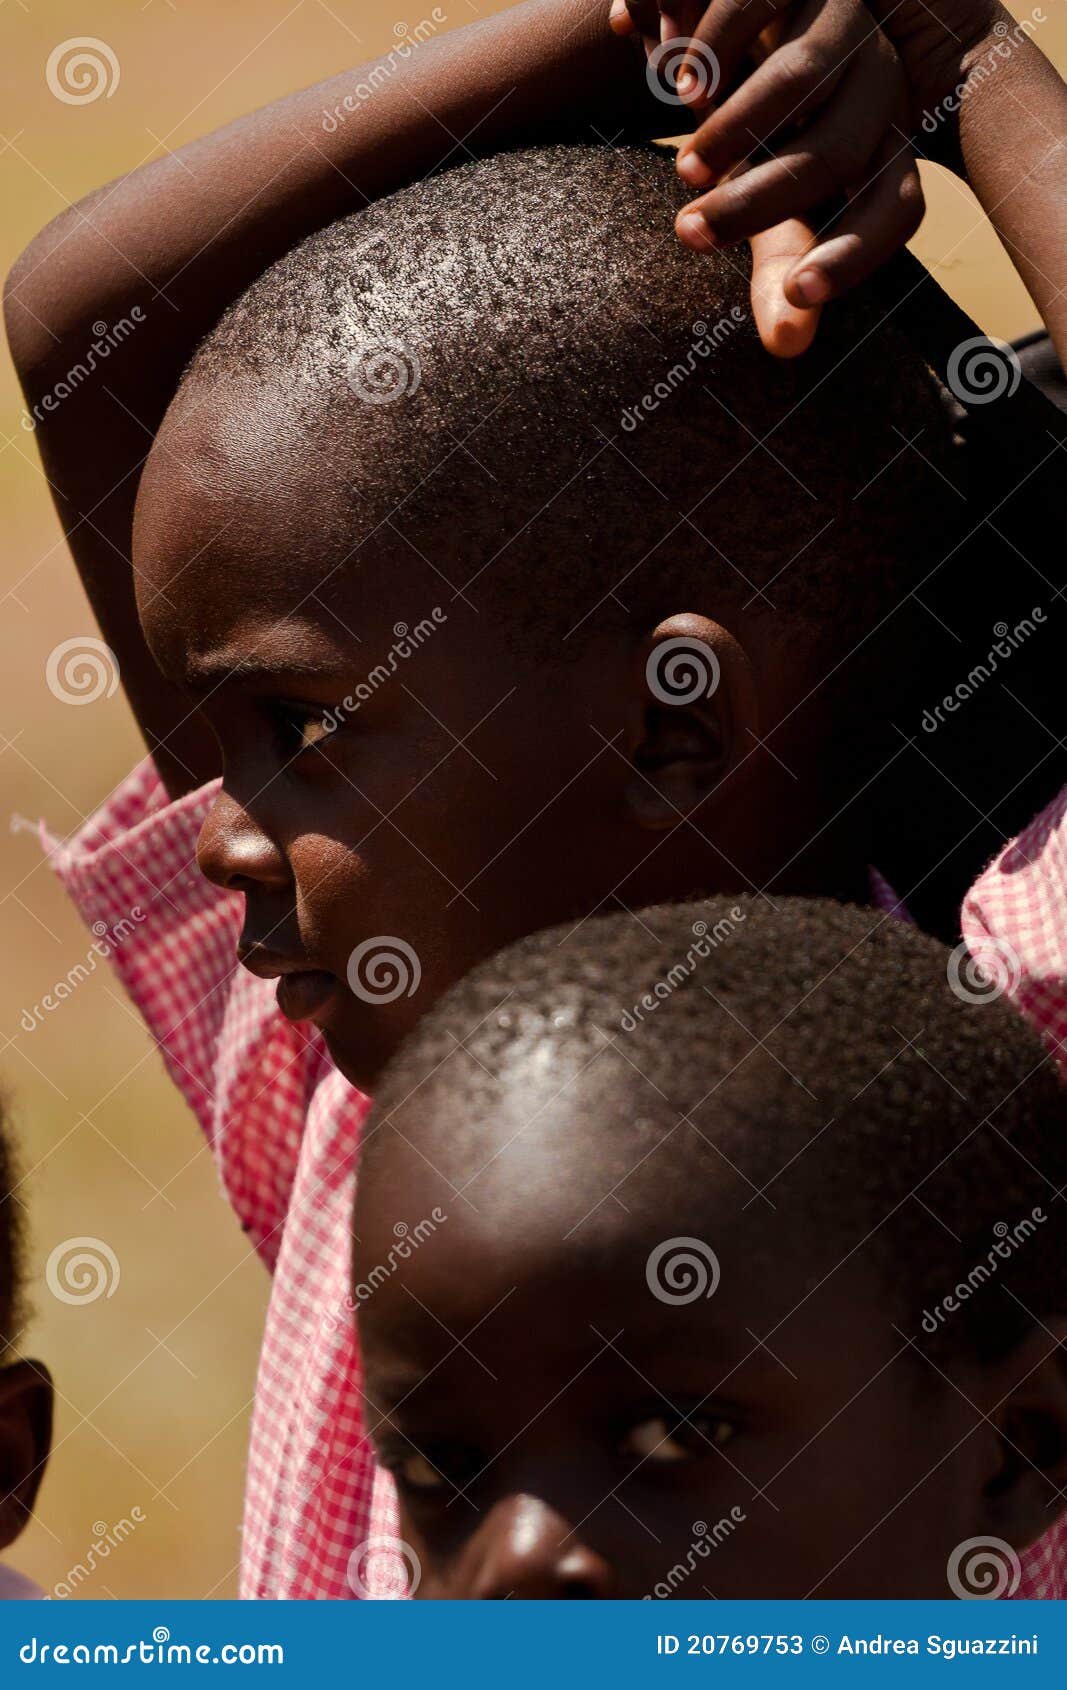 Enfants kenyans, Afrique. Enfants kenyans regardant autour - Malindi (Kenya), 5 octobre 2010